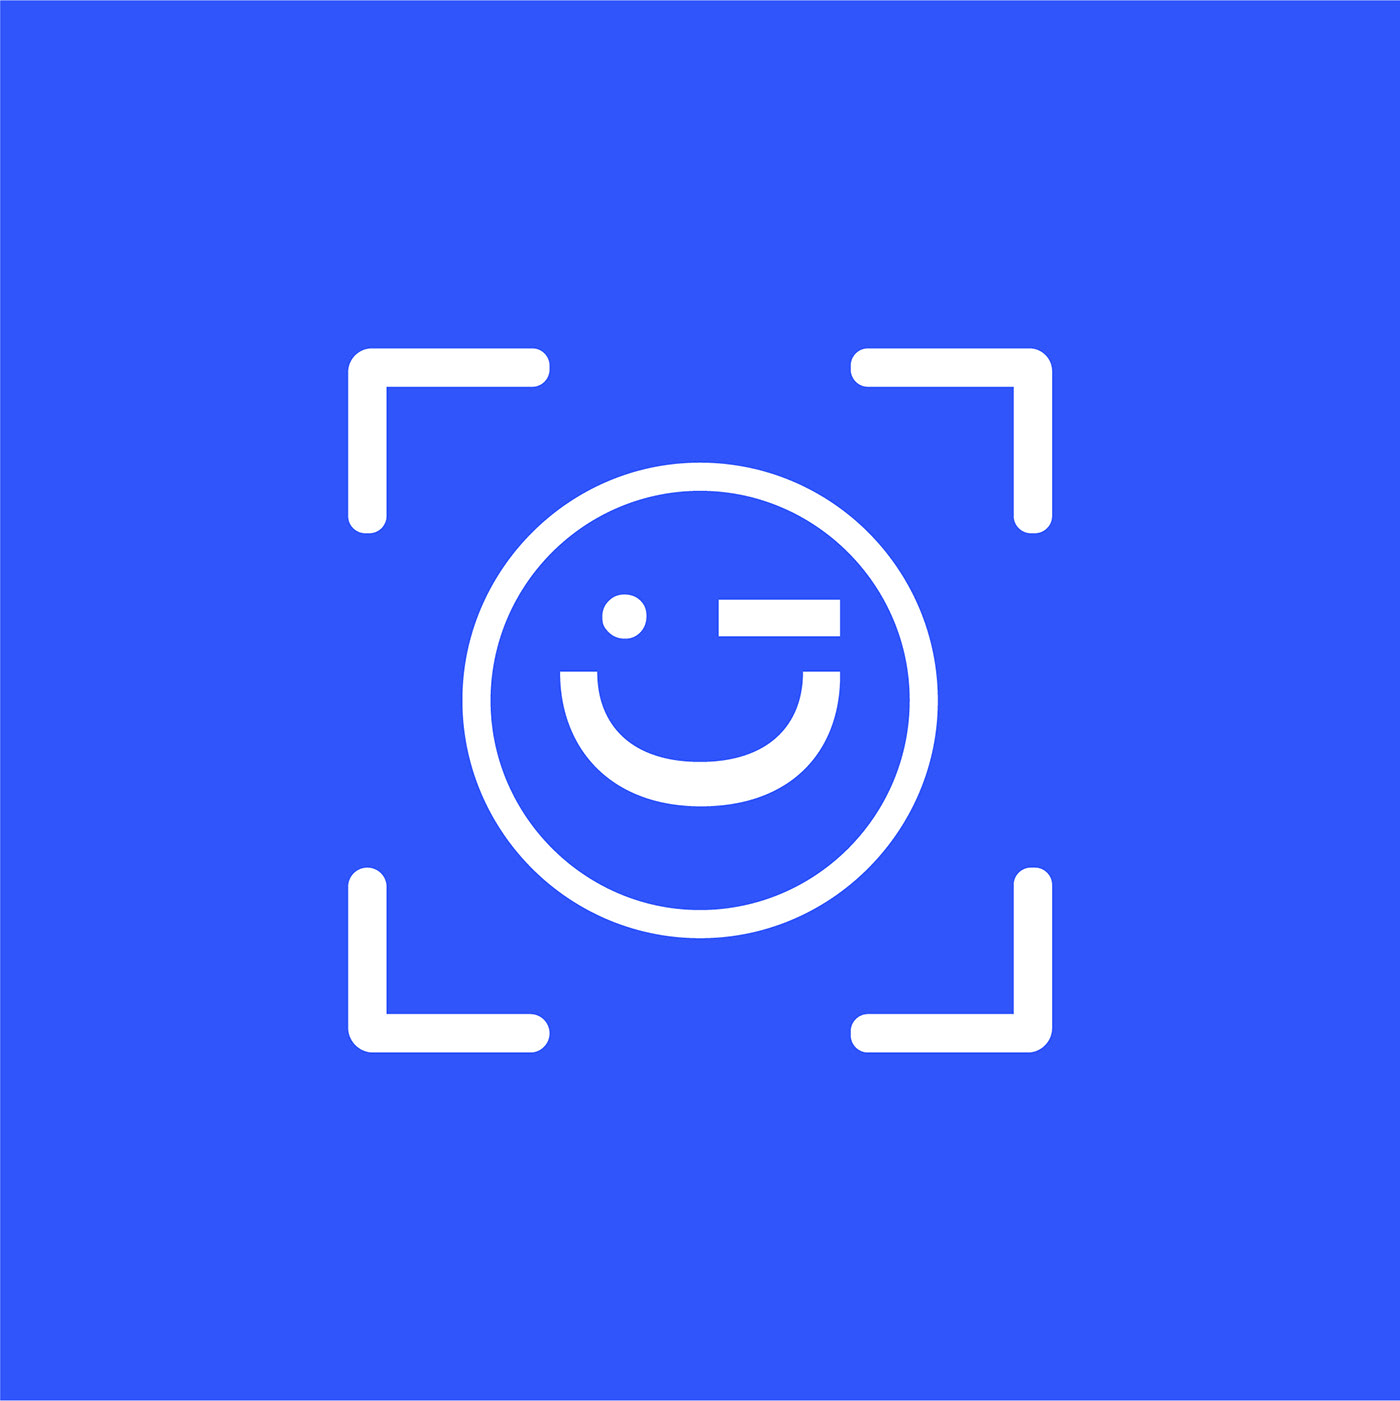 agrafixer brand identity identity logo Logo Design minimal logo Smileid logo